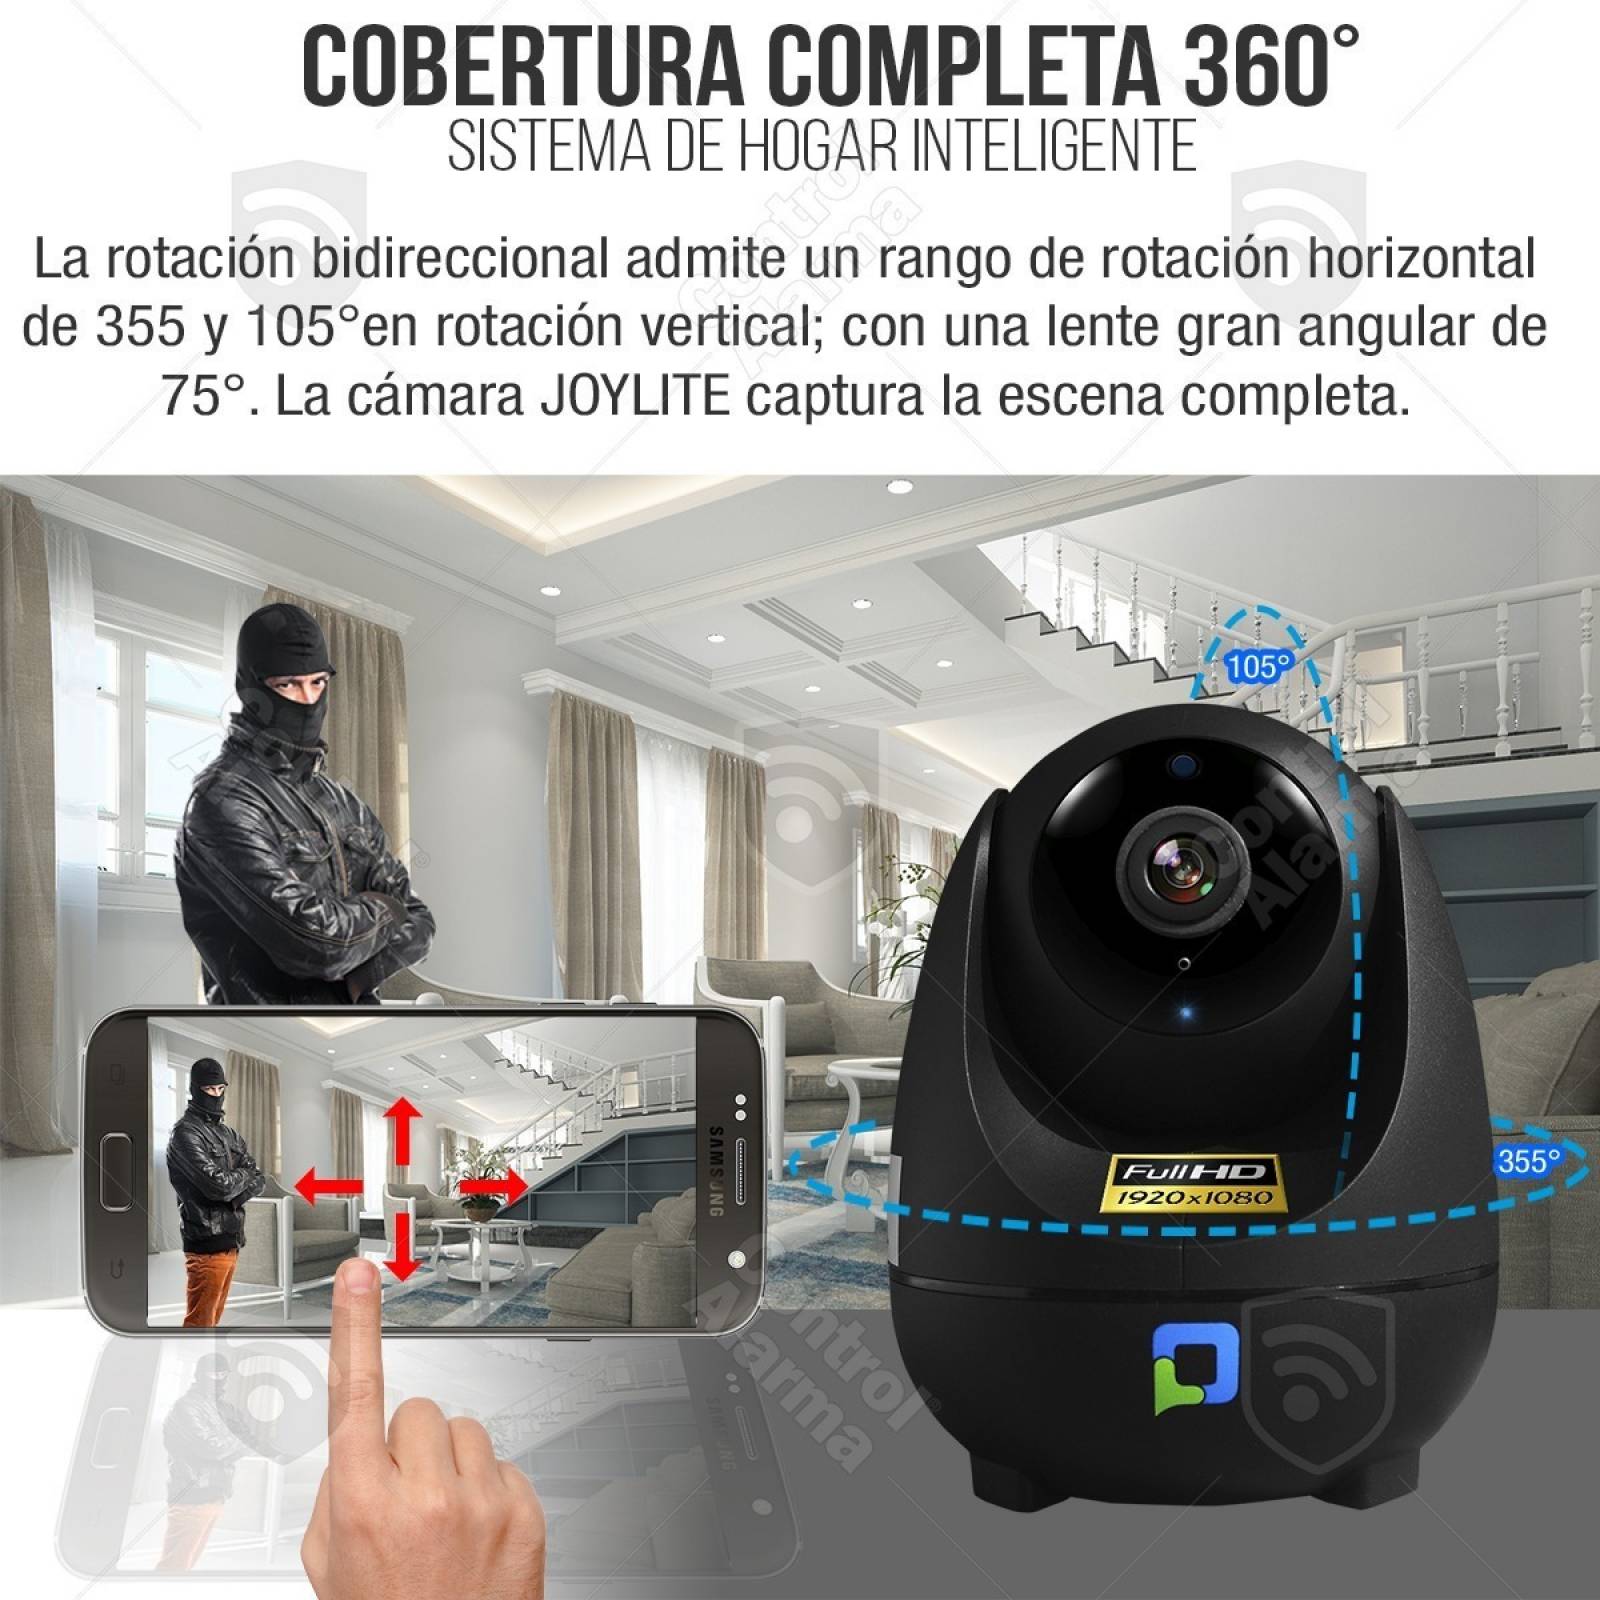 8 Camaras Wifi Ip Nube Deteccion Movimiento Full Hd  Seguridad Inalambrica Vigilancia App Robotica Vision Nocturna Audio